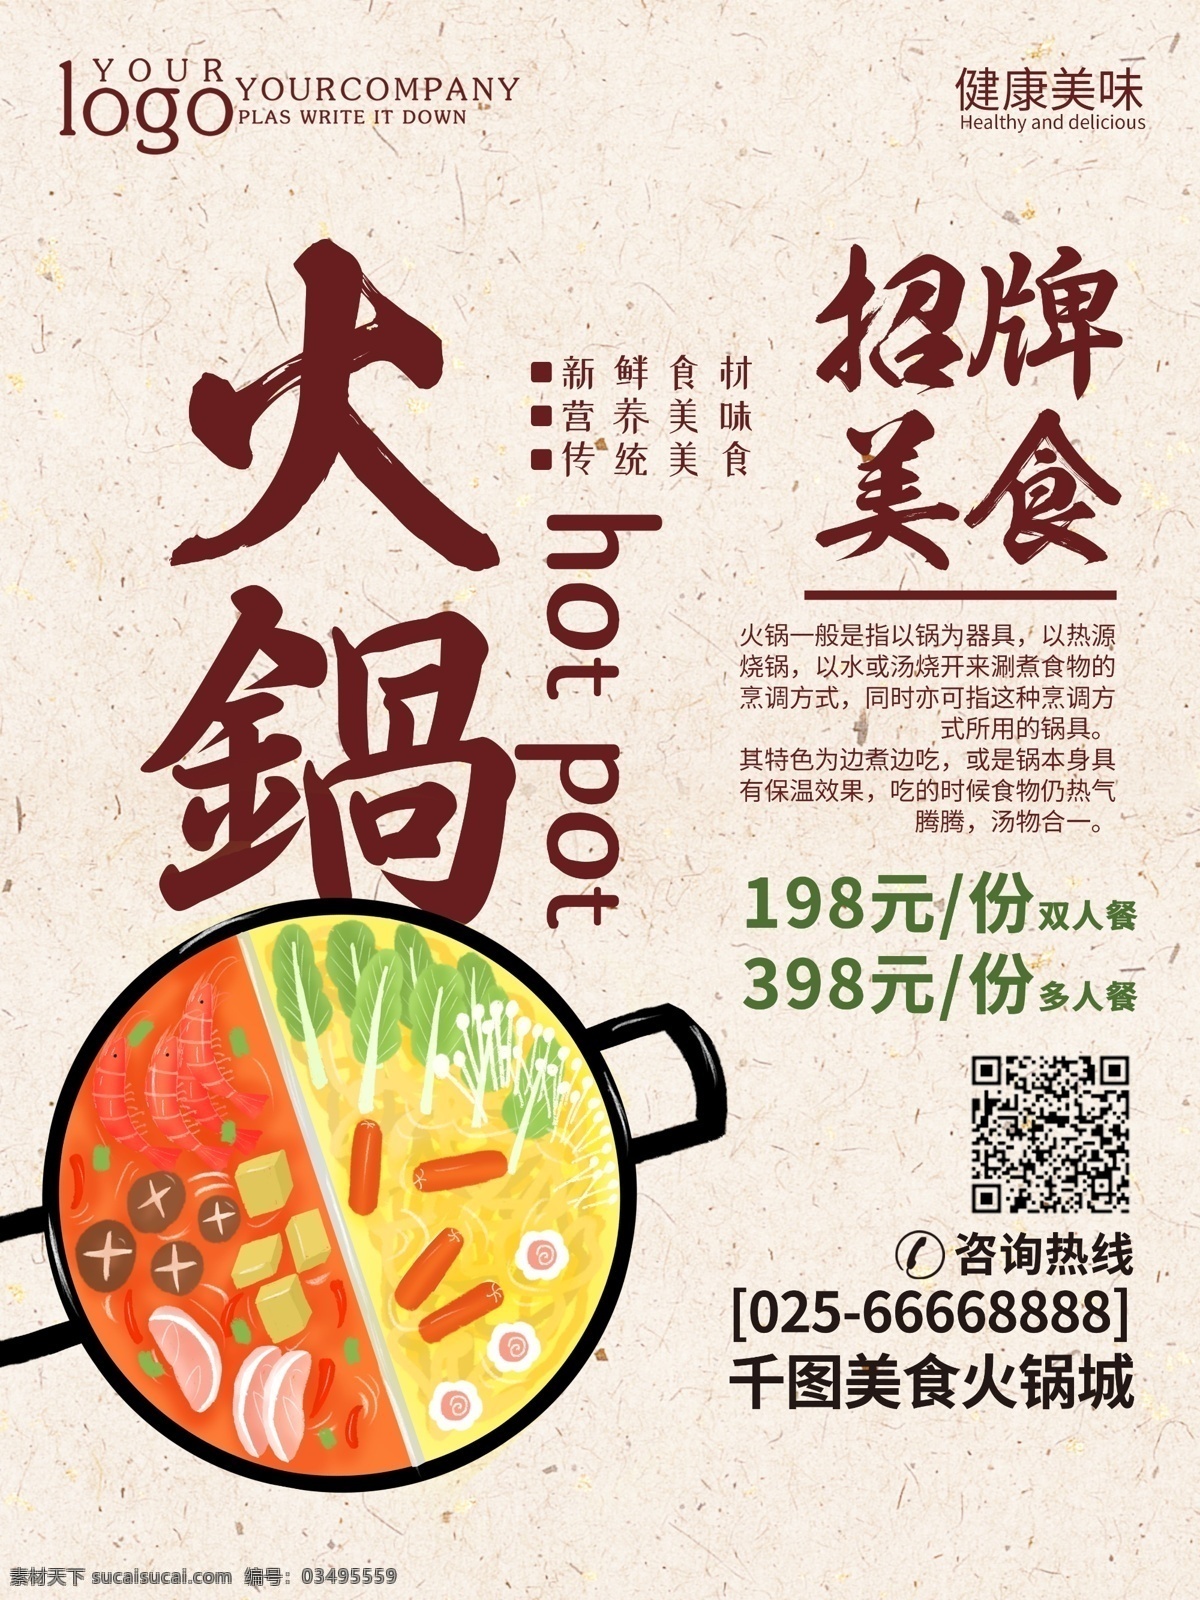 创意 简约 火锅 美食 促销 海报 食物 餐厅 餐饮 美味